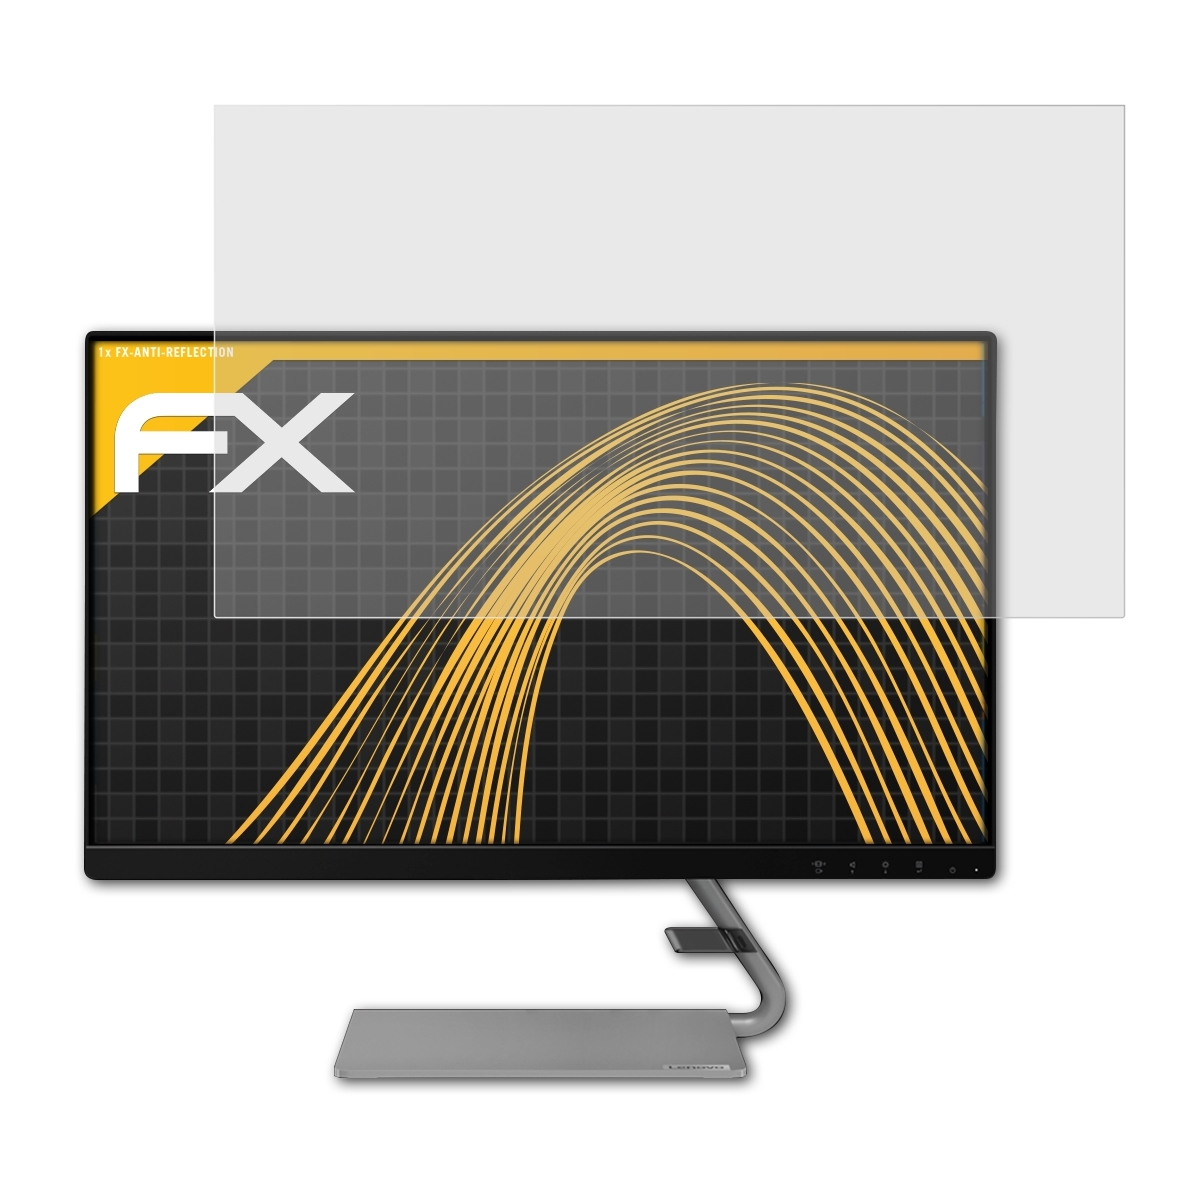 FX-Antireflex Lenovo Displayschutz(für ATFOLIX Q24i-1L)